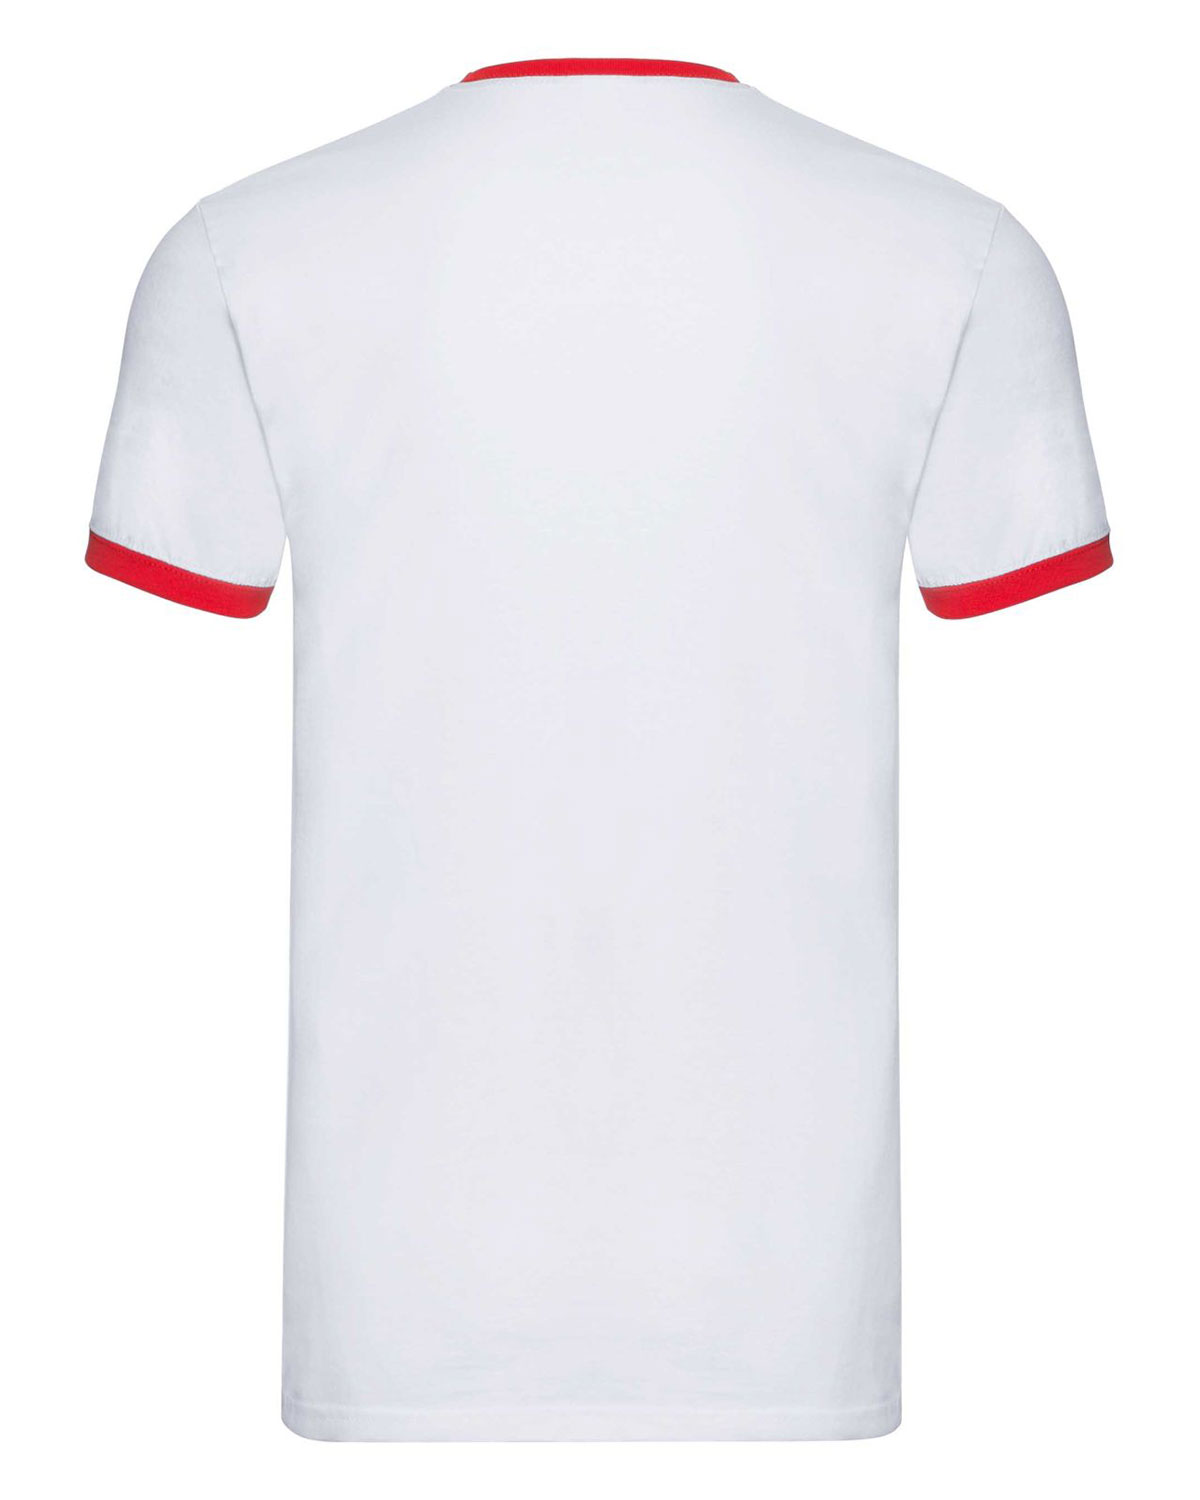 Ringer T-Shirt White/Red XXL